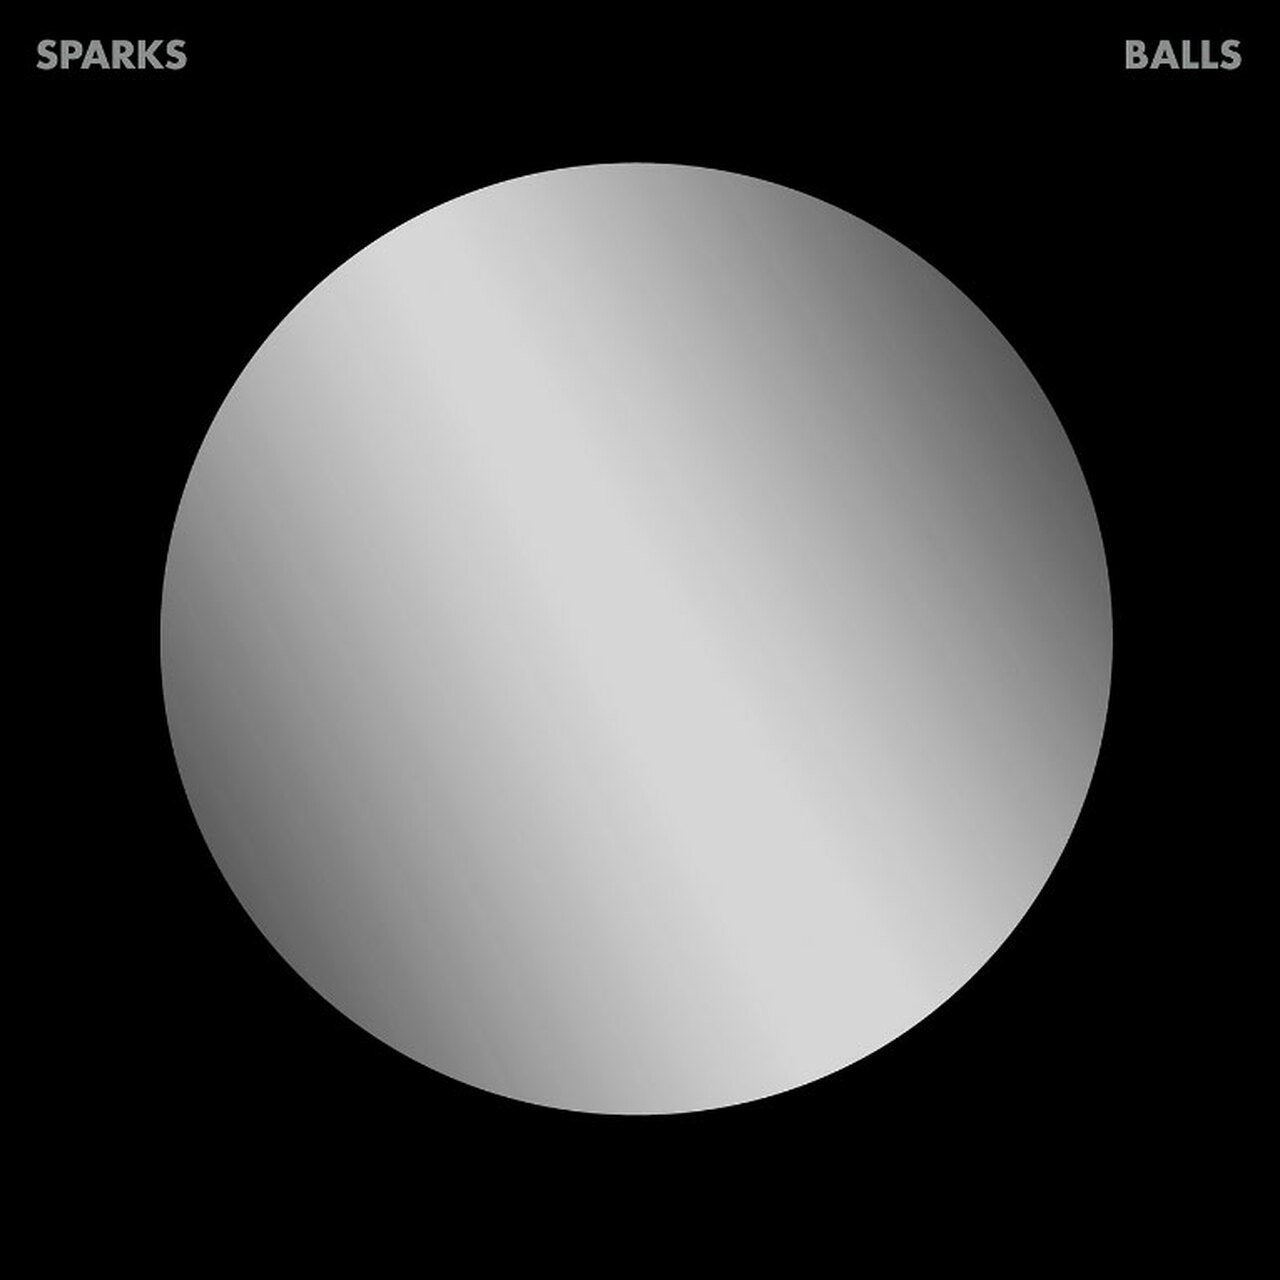 Sparks "Balls" 2LP